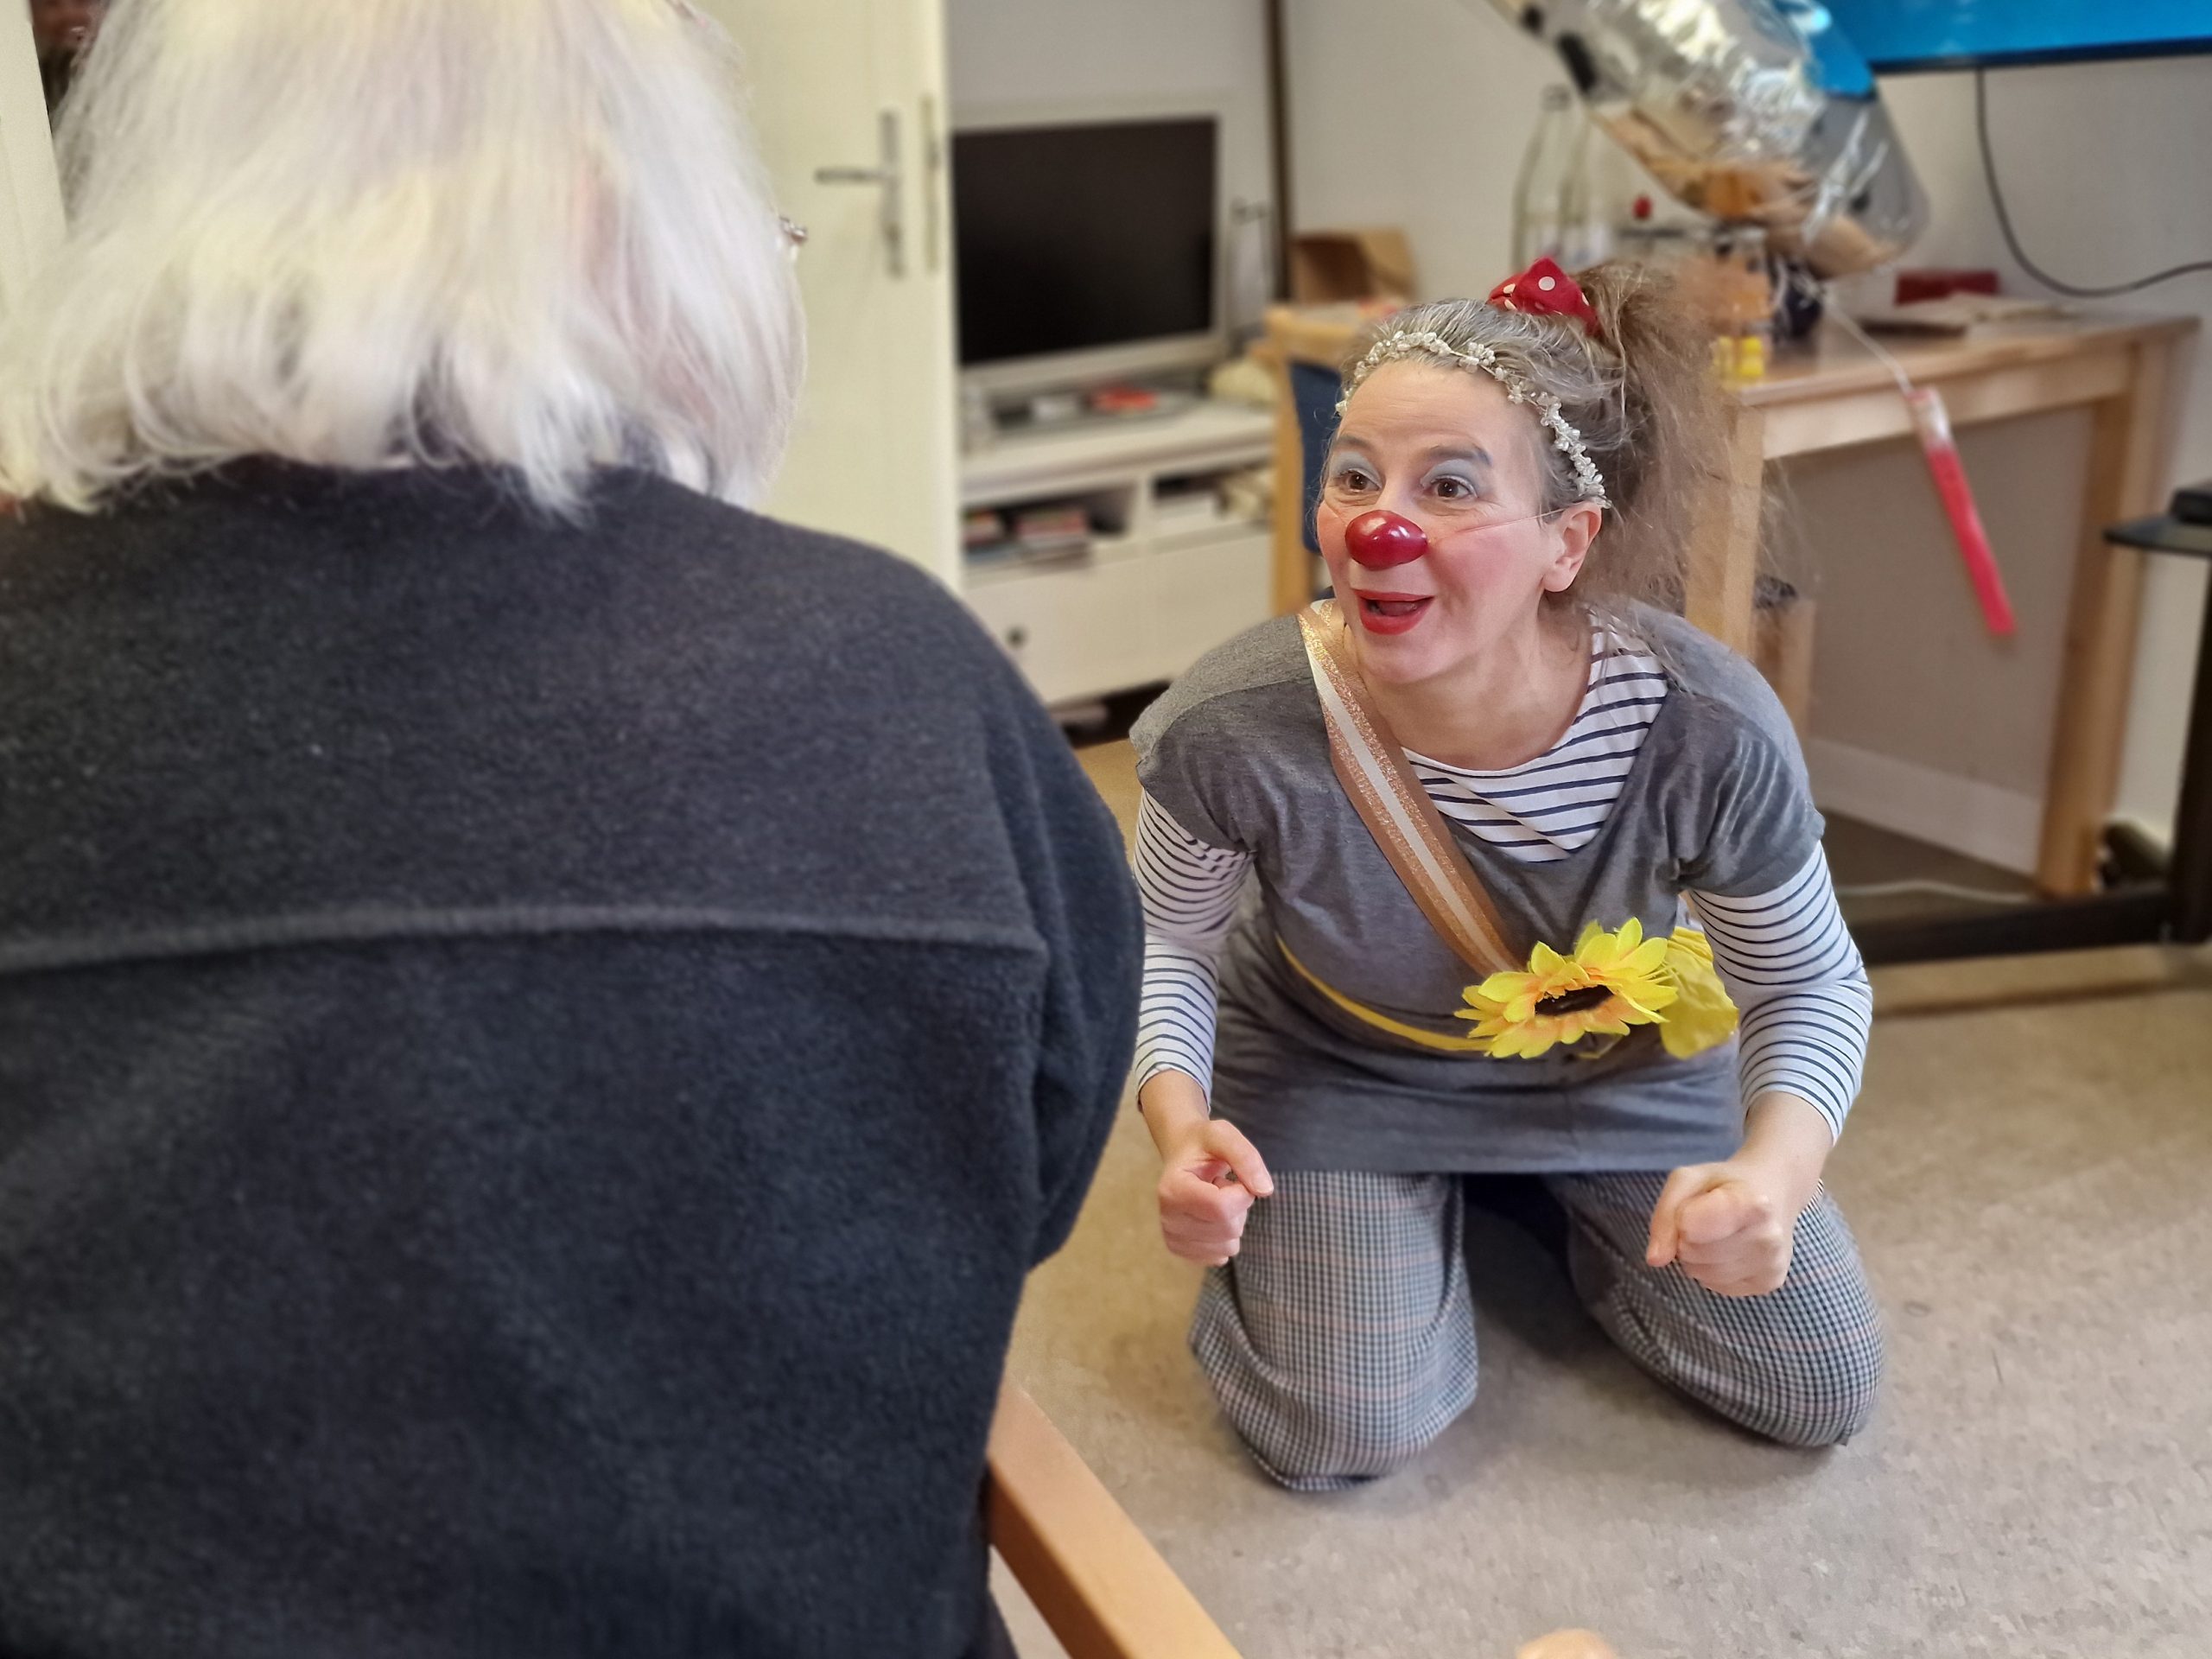 Clown hospitalier professionel en train de faire rire une cliente